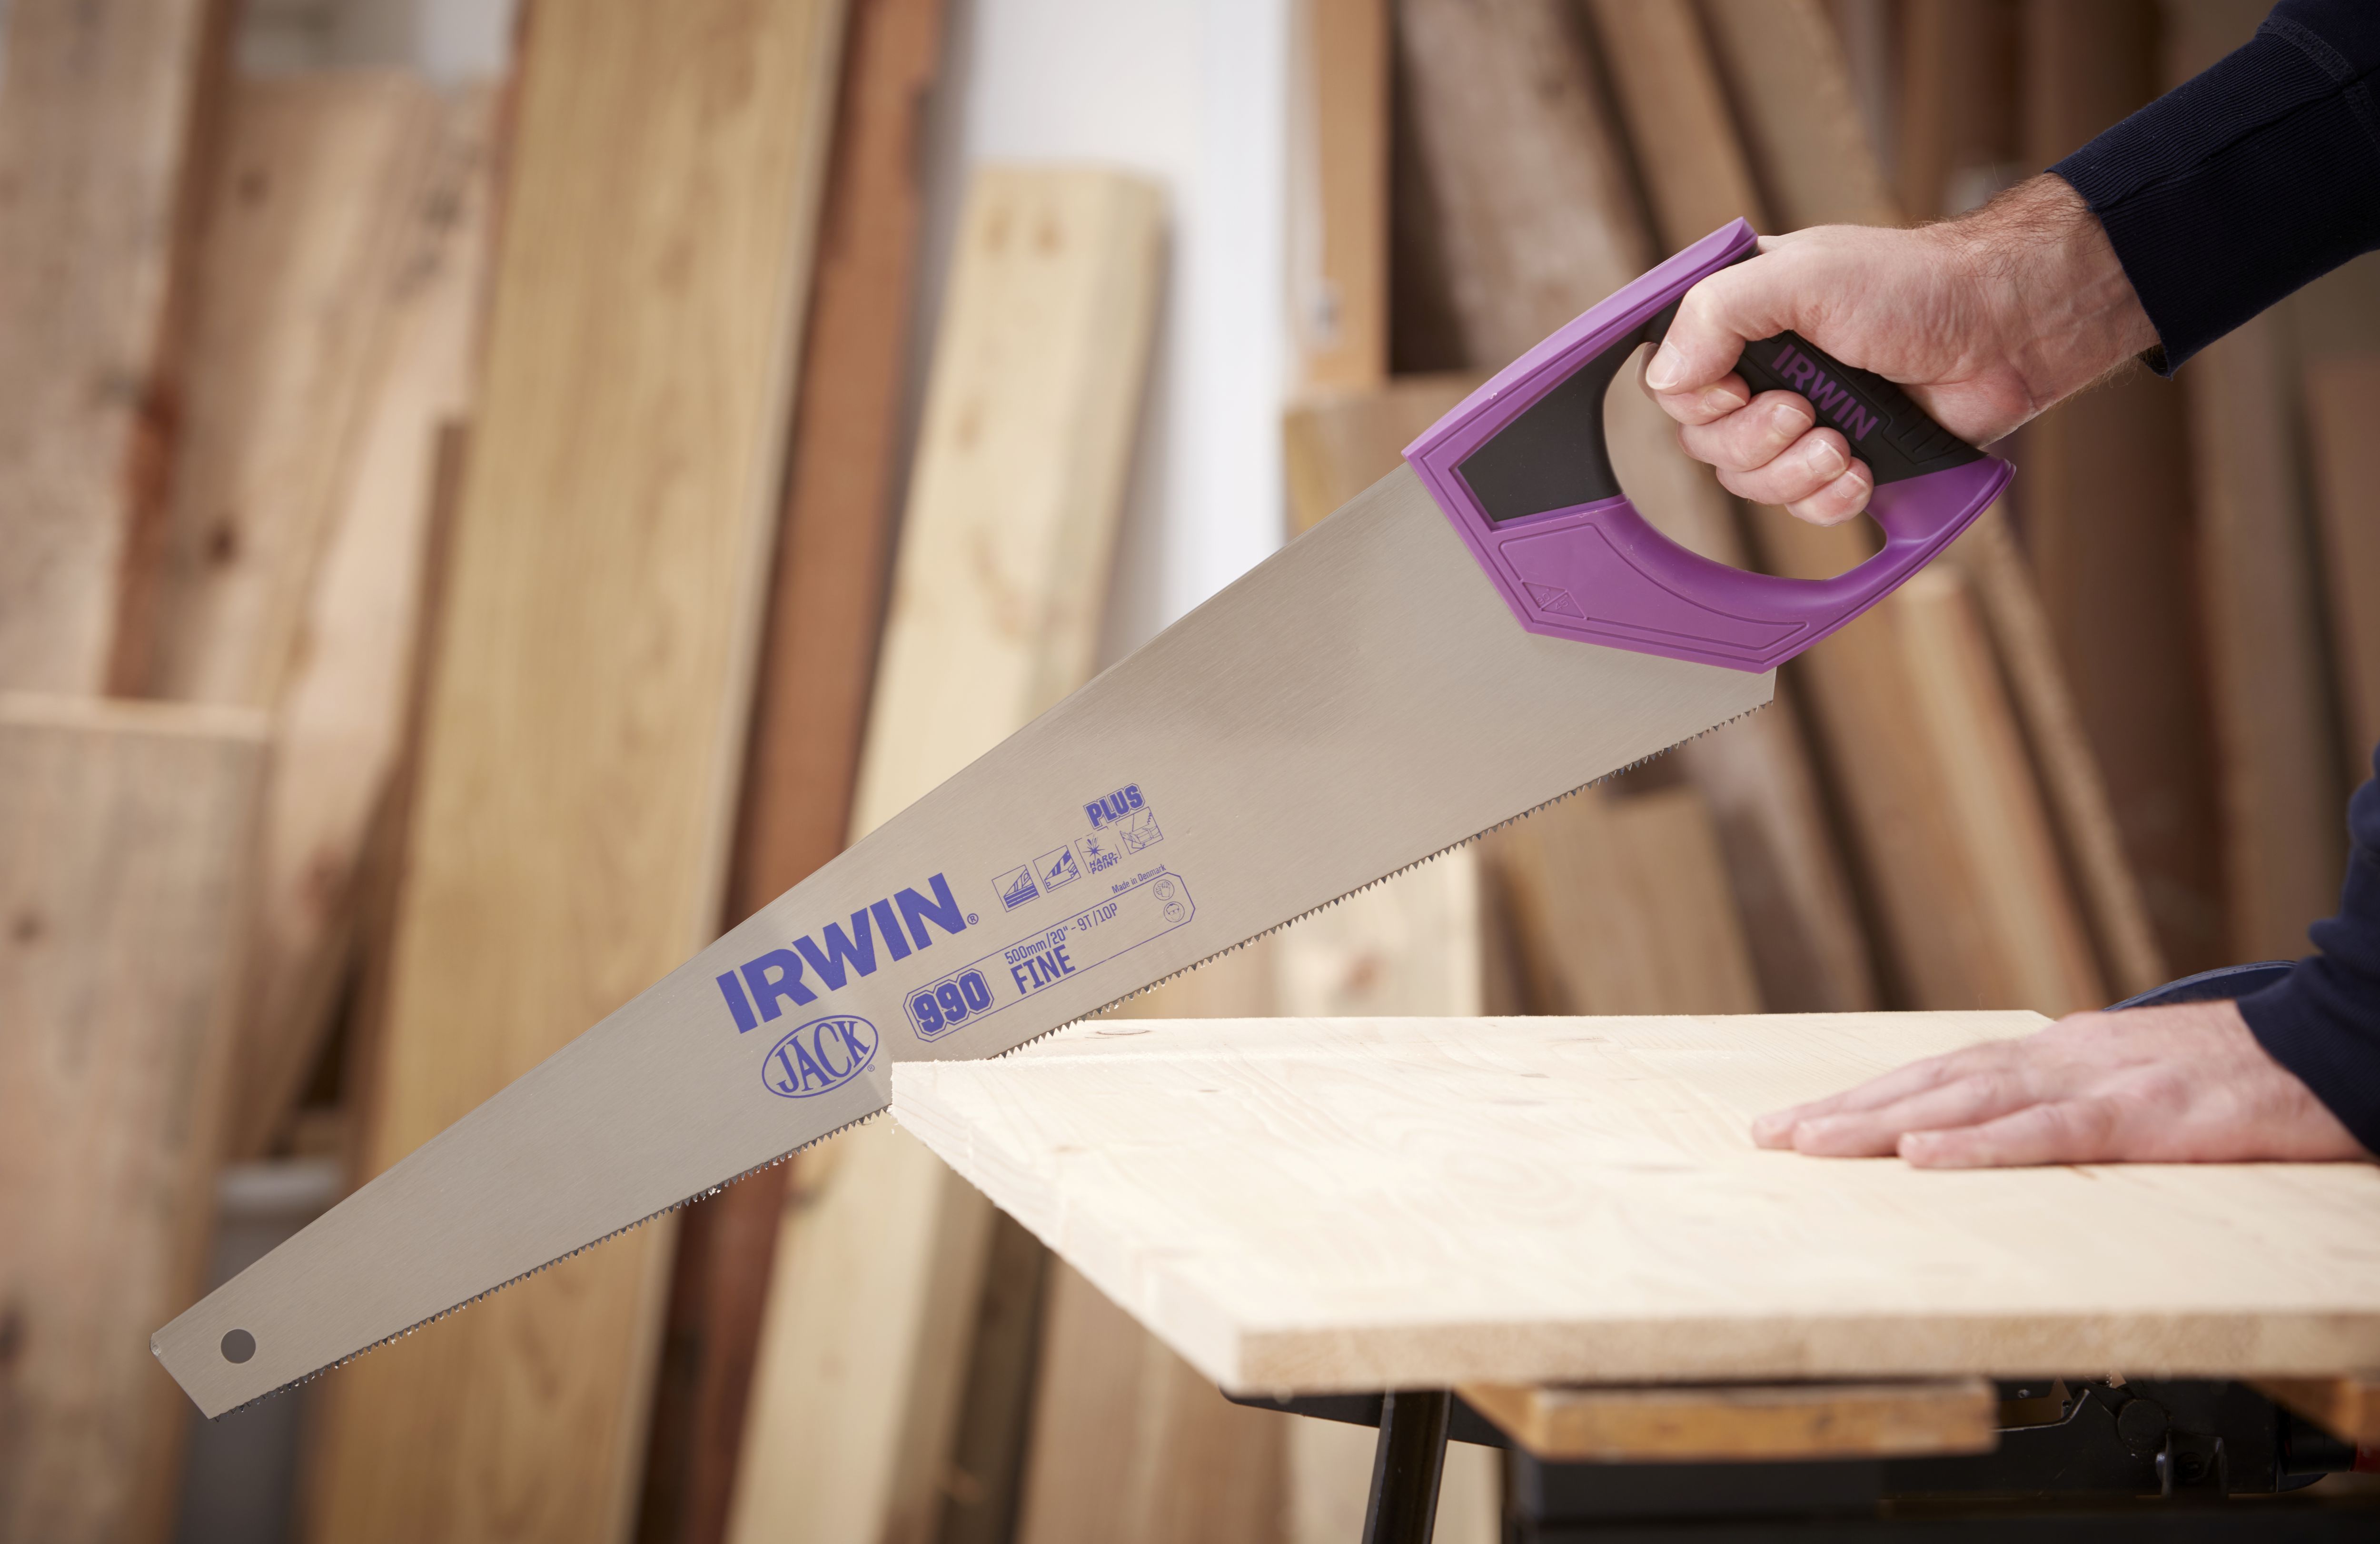 Irwin Jack plus 500mm Fine cut Panel saw, 9 TPI